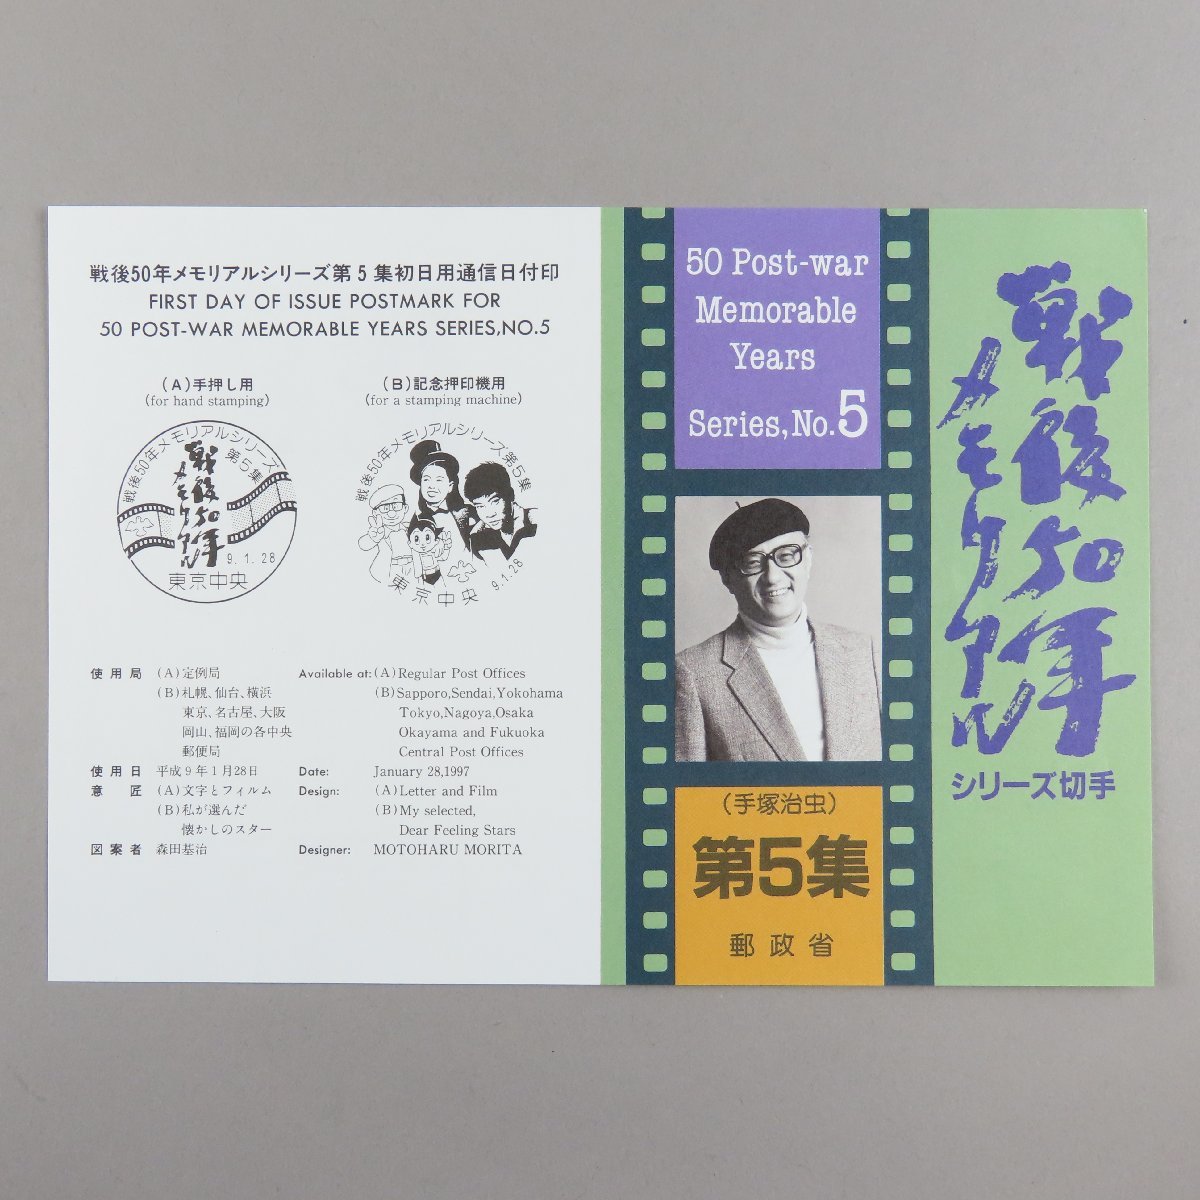 [ марка 2518] битва после 50 год memorial серии no. 5 сборник рука .. насекомое юбилейная марка 1997 год 80 иен 20 поверхность 1 сиденье почтовый . инструкция инструкция брошюра есть 